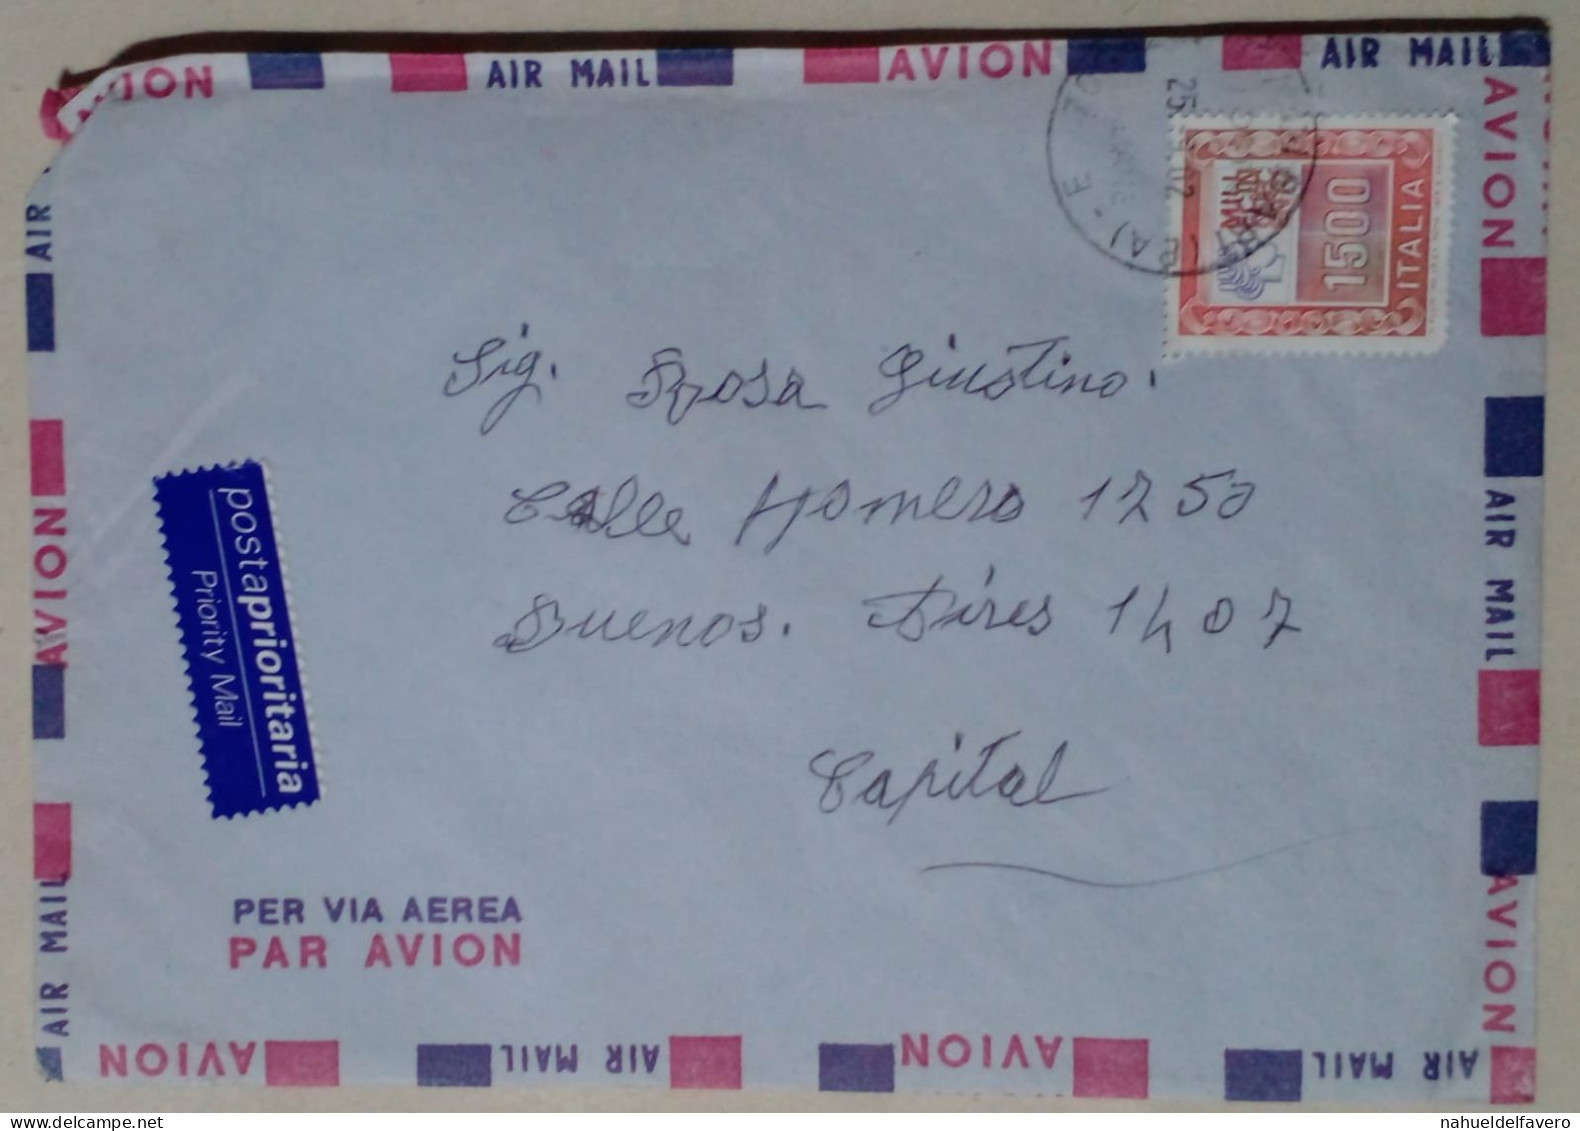 Italie - Poste Aérienne Avec Timbre (2002) - Airmail